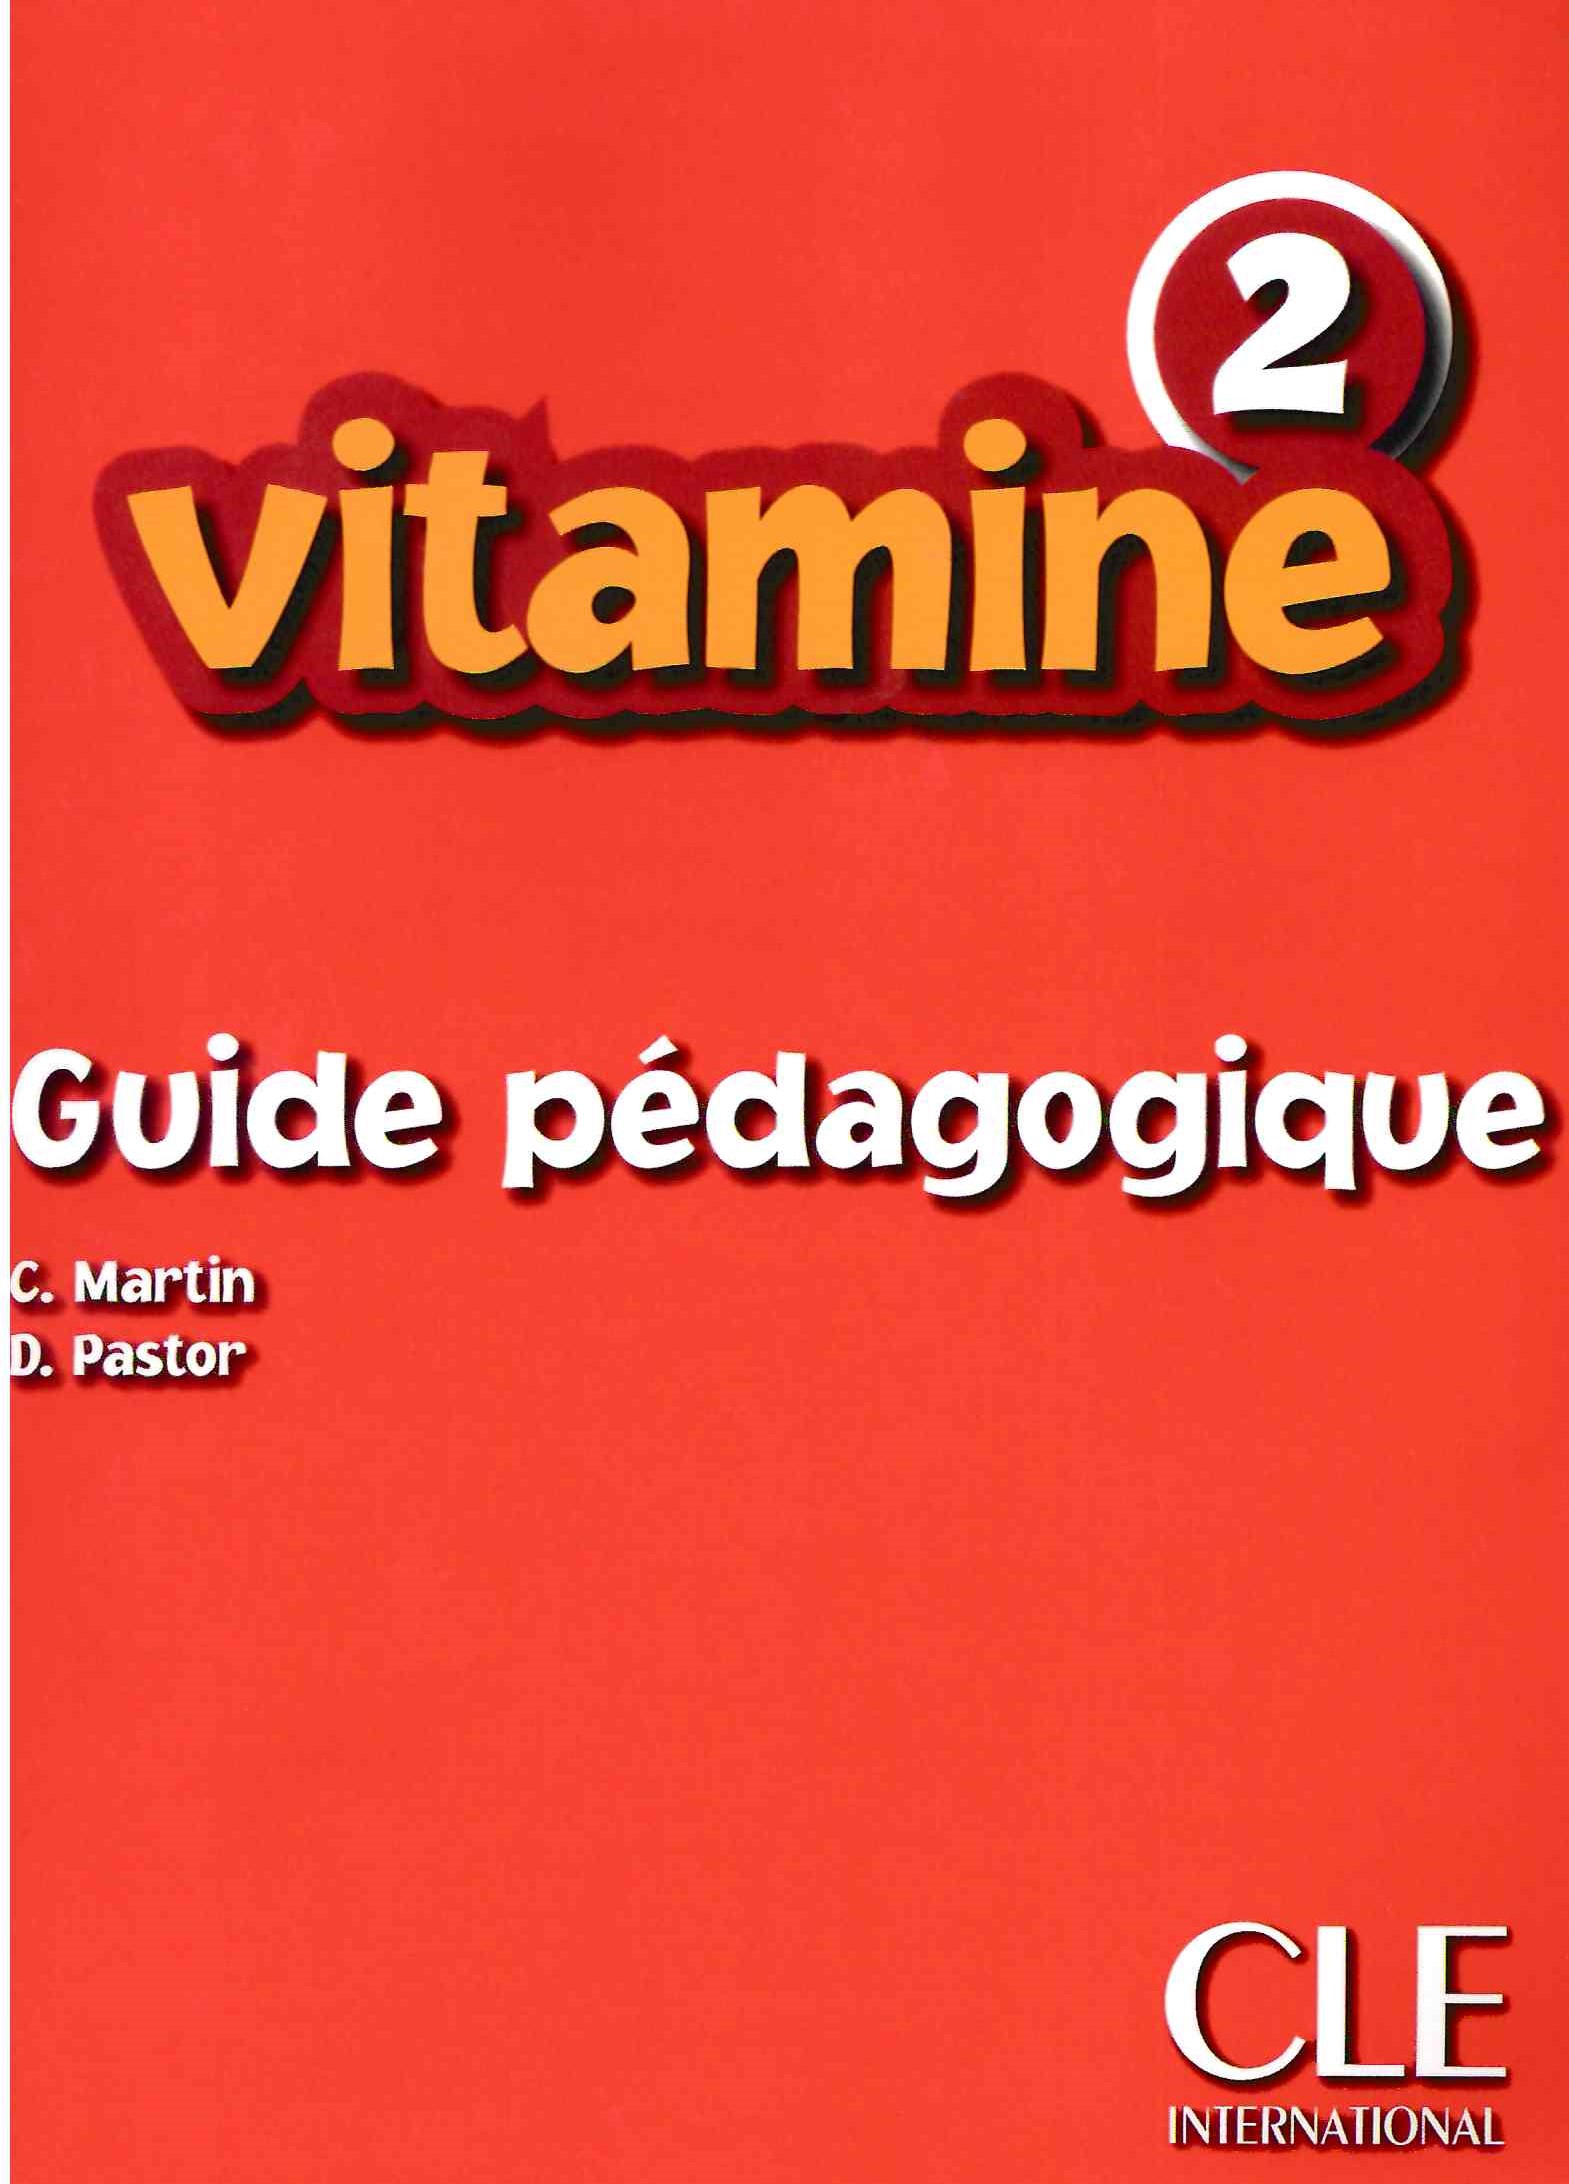 Vitamine 2 Guide pedagogique / Книга для учителя